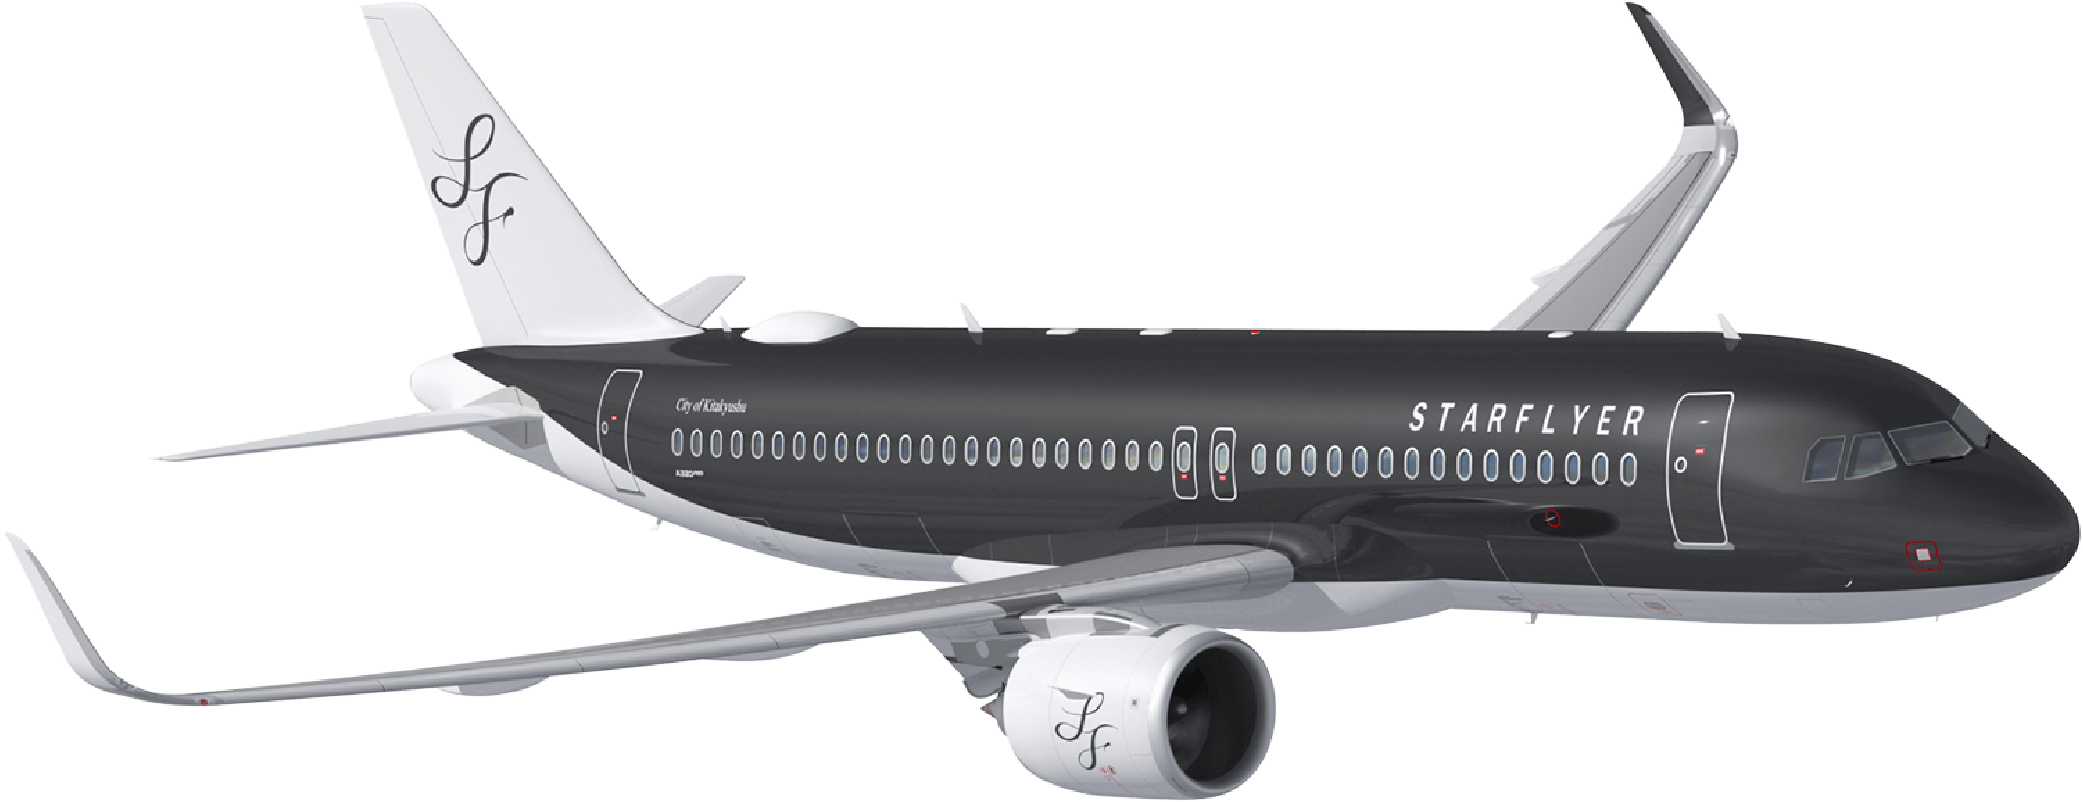 A320neo特設ページ | 新型機 | スターフライヤー